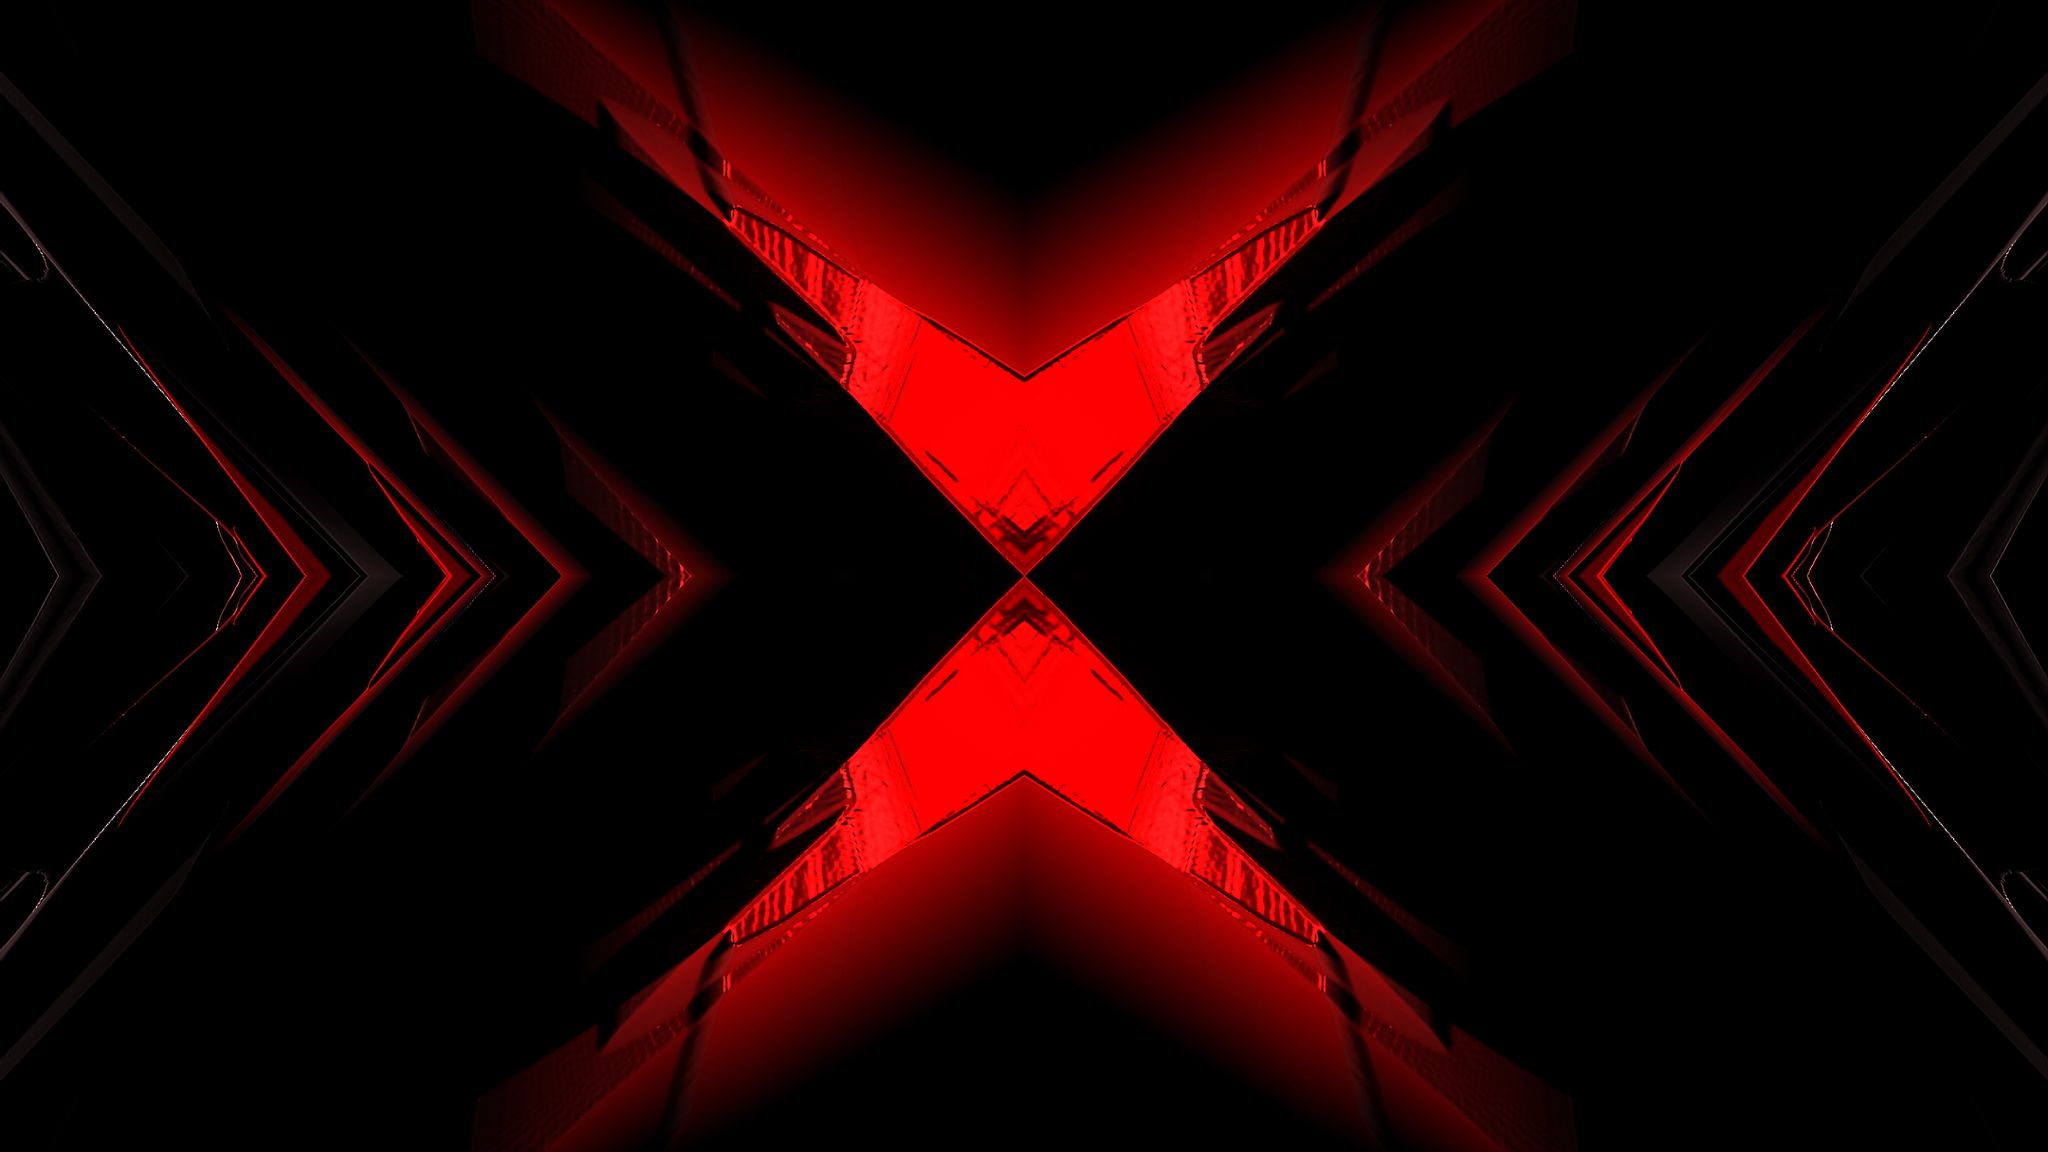 Hình nền trừu tượng kích thước 2048x1152 với sự kết hợp giữa đỏ và đen sẽ tạo ra một cảm giác tối giản và hiện đại cho màn hình của bạn. Khám phá hình ảnh liên quan để trải nghiệm một không gian làm việc đầy sự nghệ thuật.